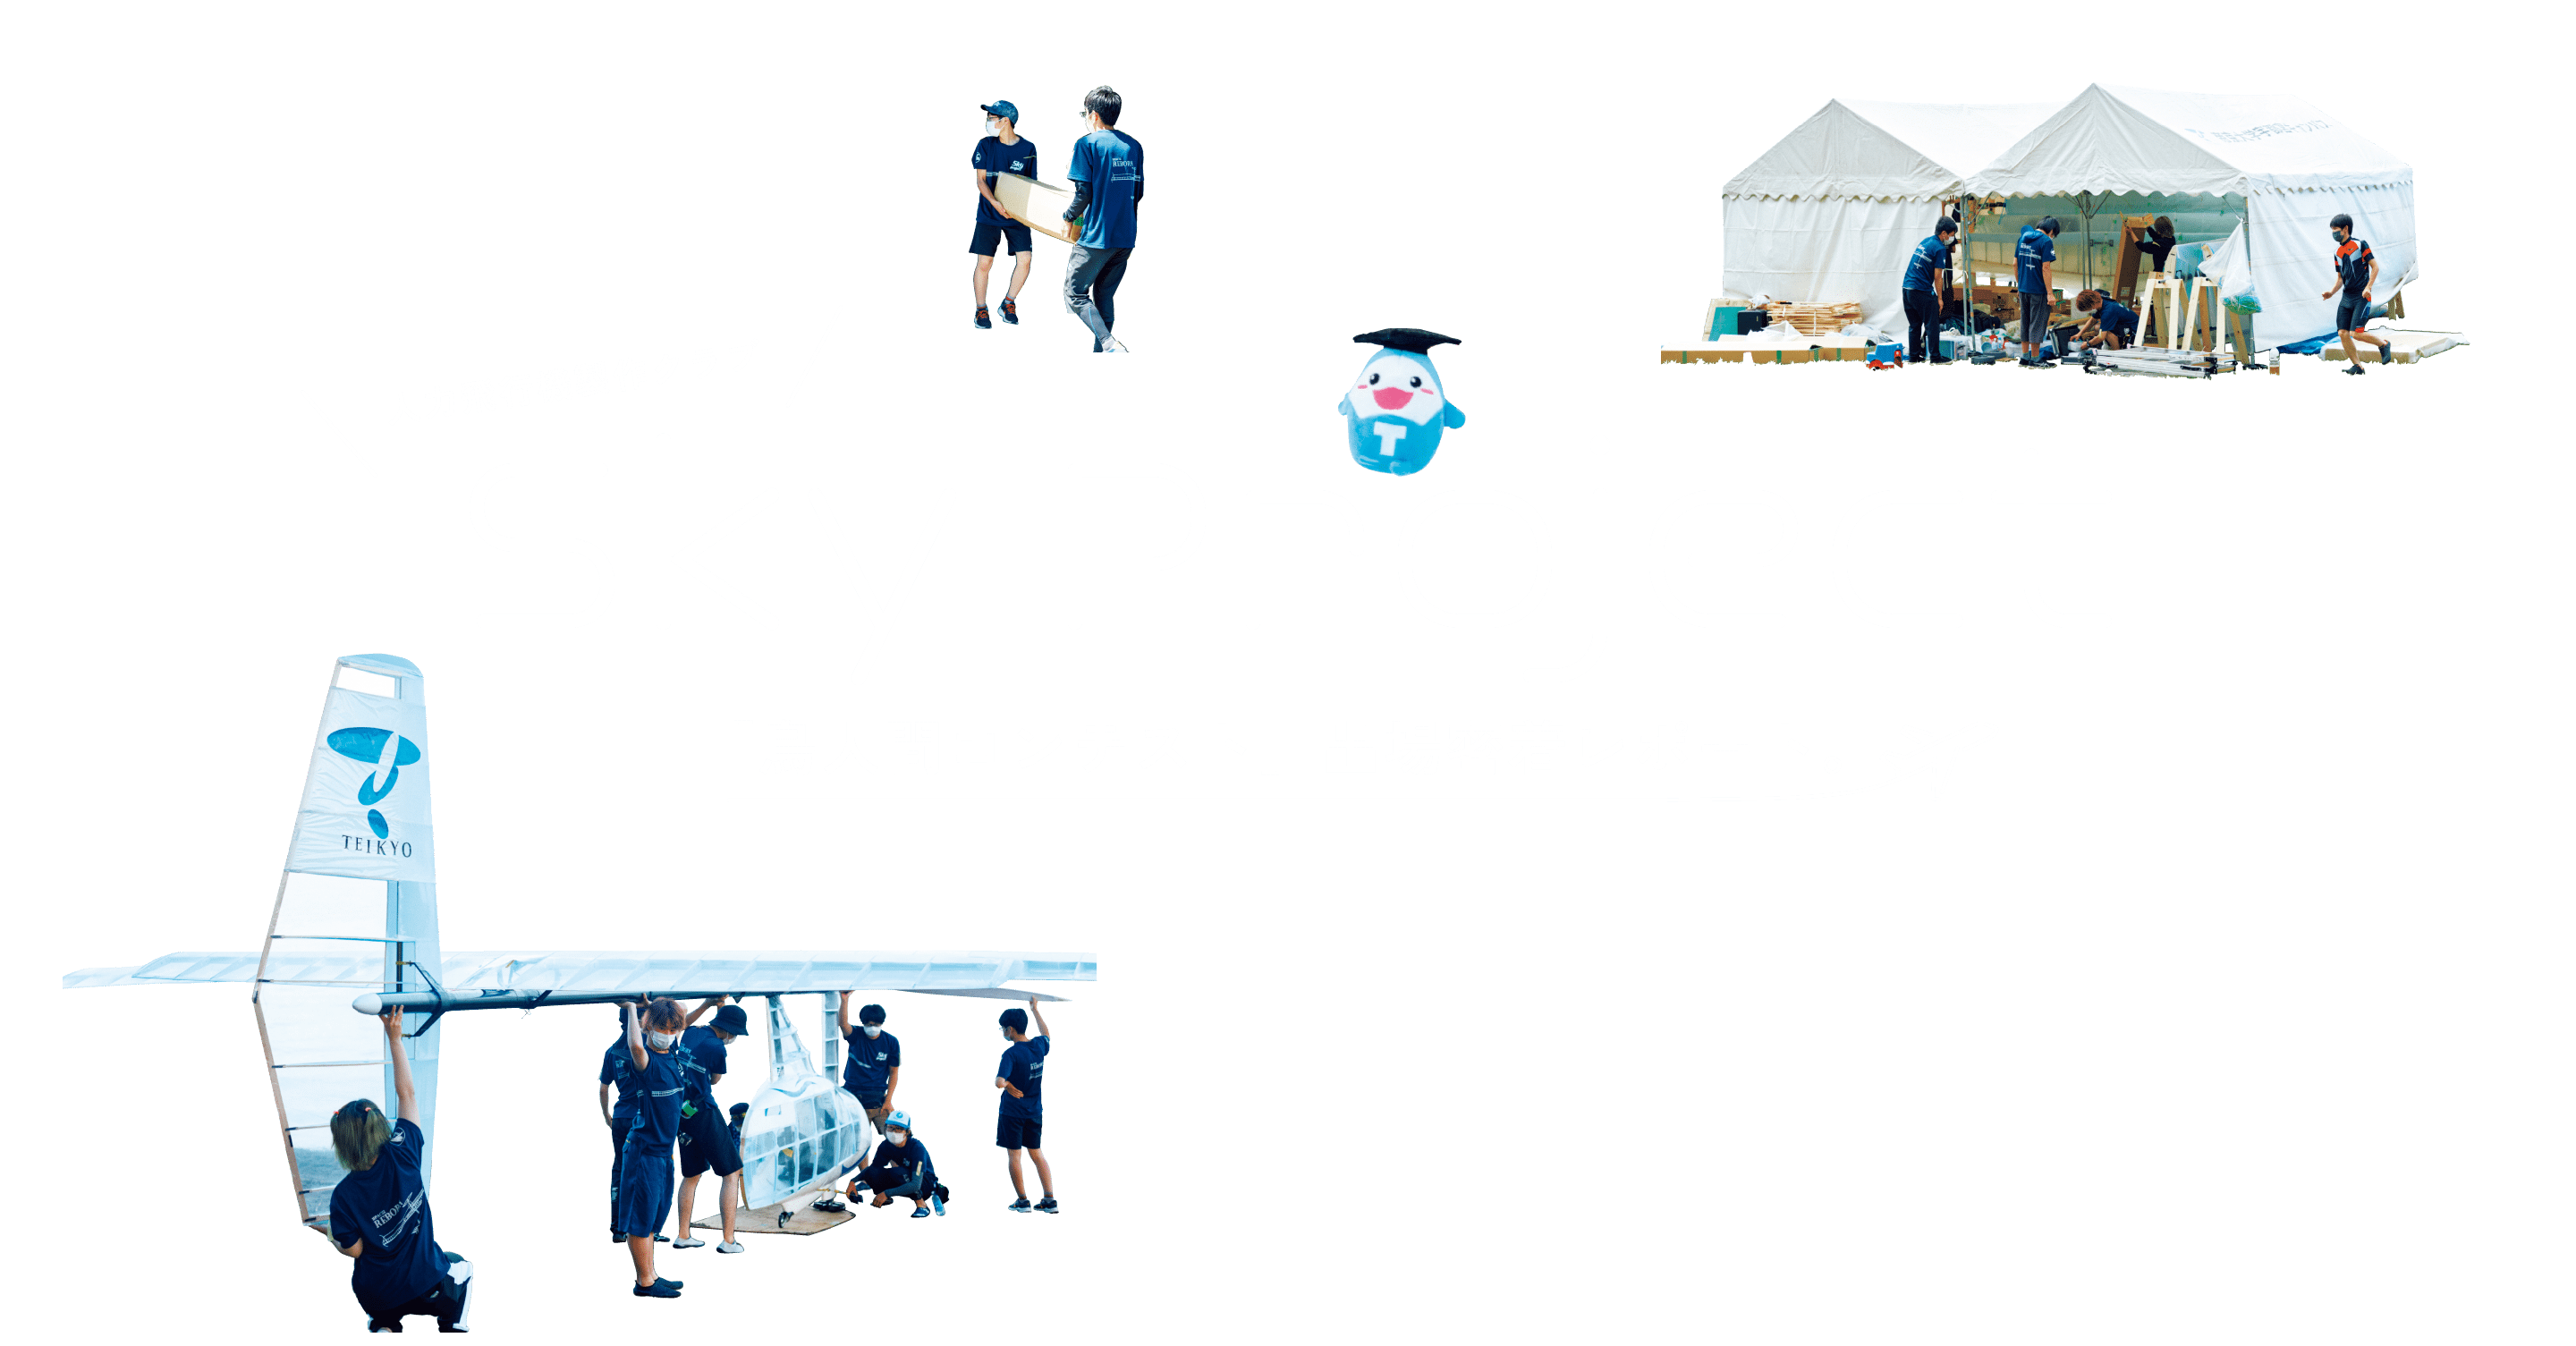 人力飛行機製作クラブ Sky Project 「鳥人間コンテスト」出場密着レポート。